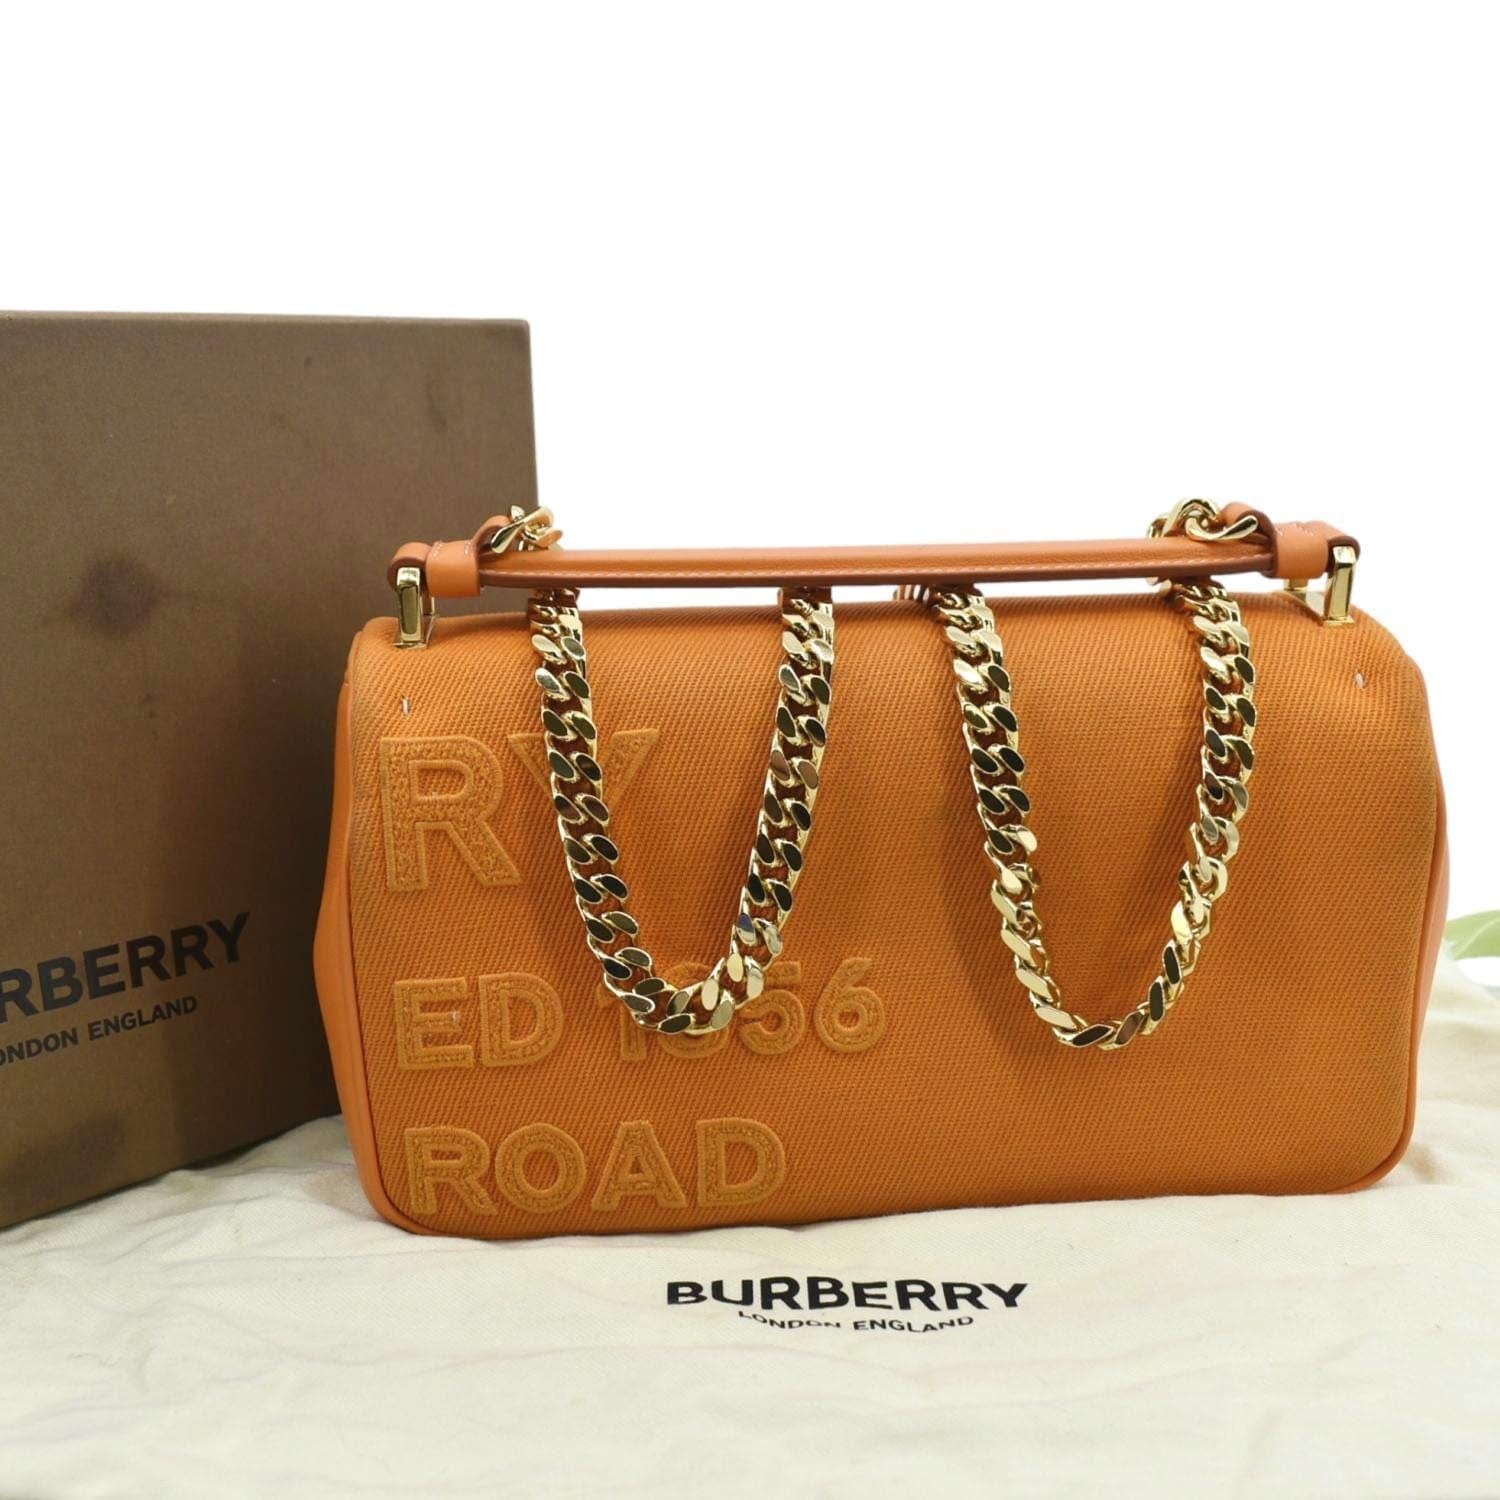 Burberry bags?? : r/handbags